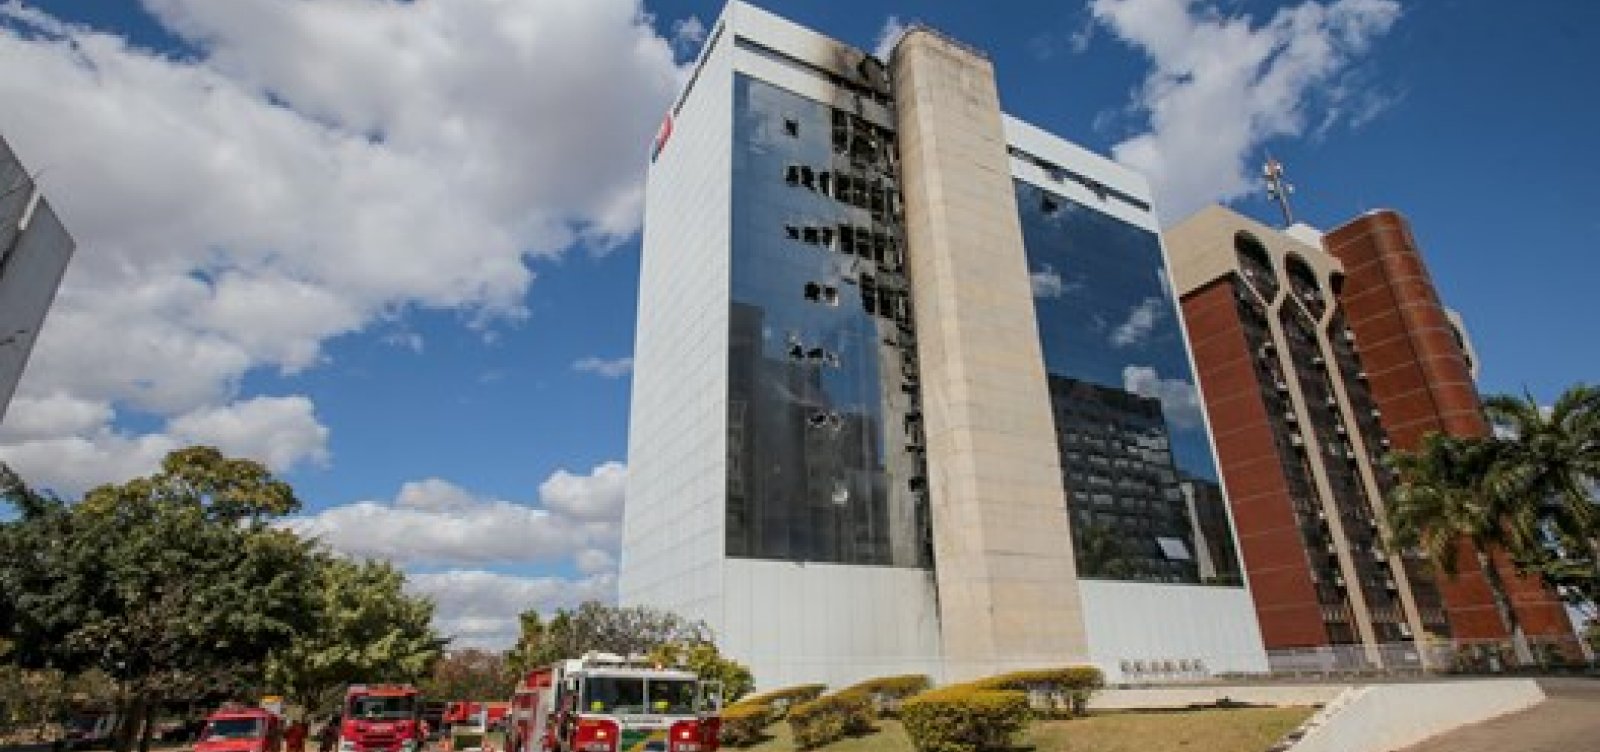 OAB adota medidas emergenciais depois de incêndio